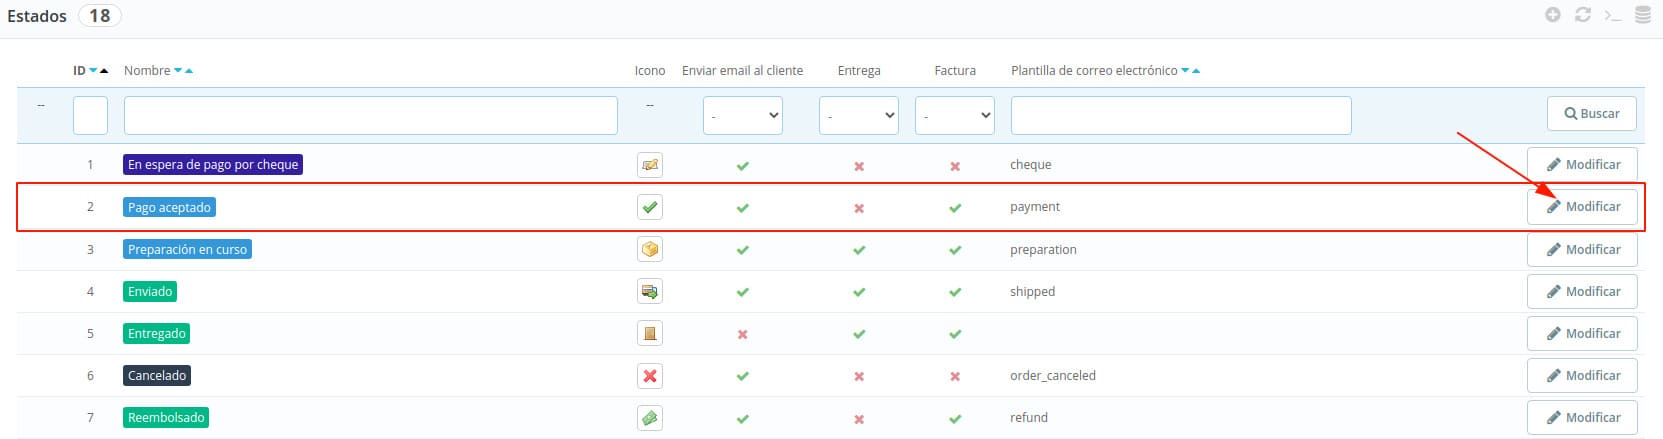 Editar estado de pedidos para configurar facturas en PrestaShop